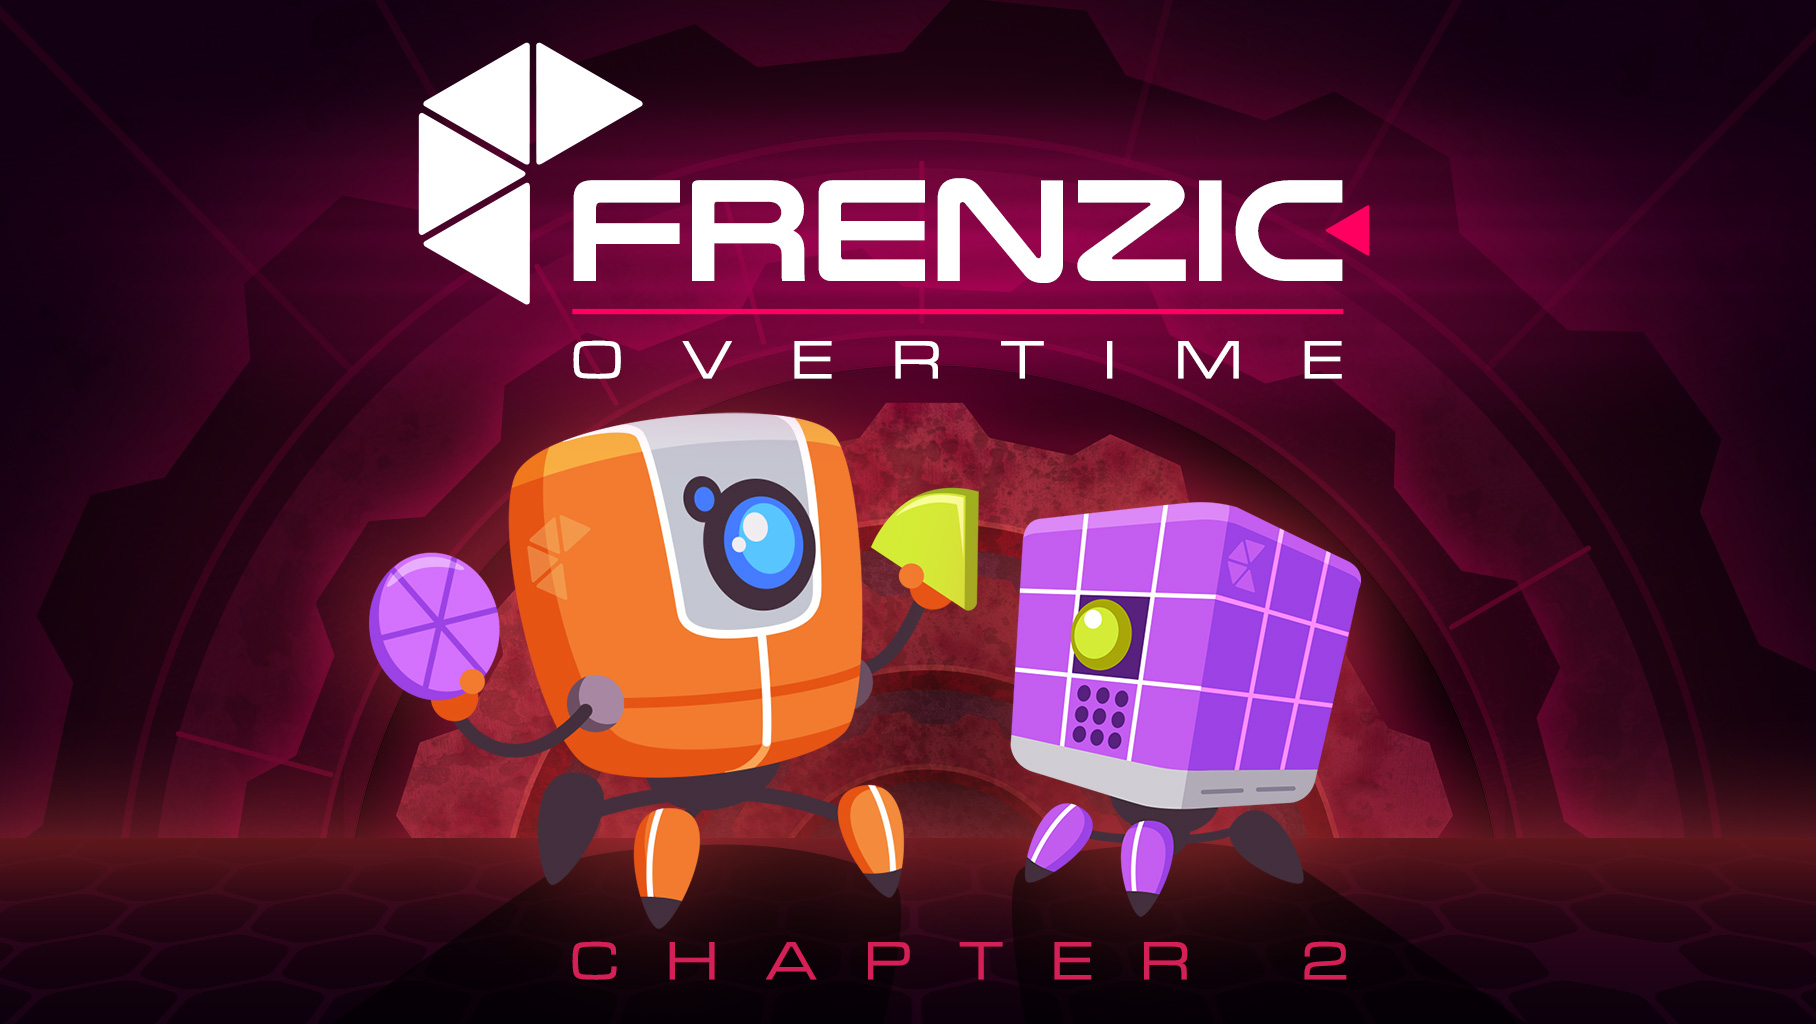 Frenzic: Overtime, Chapter 2